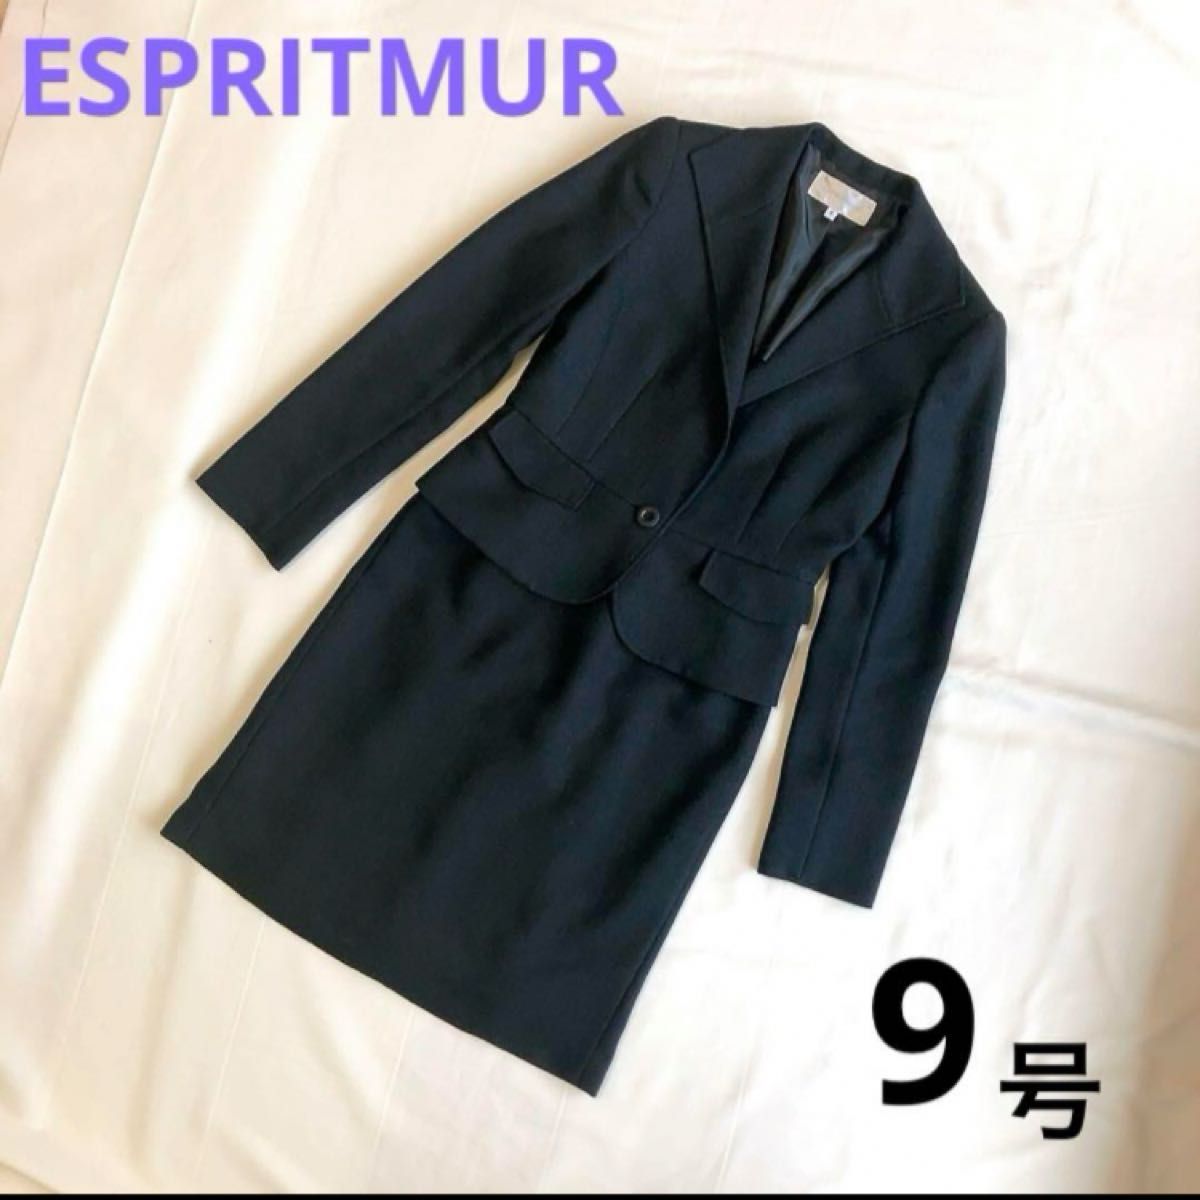 【クリーニング済】エスプリミュール スカートスーツ 9号 M ブラック 黒 春 ESPRITMURE セレモニースーツ 卒業式